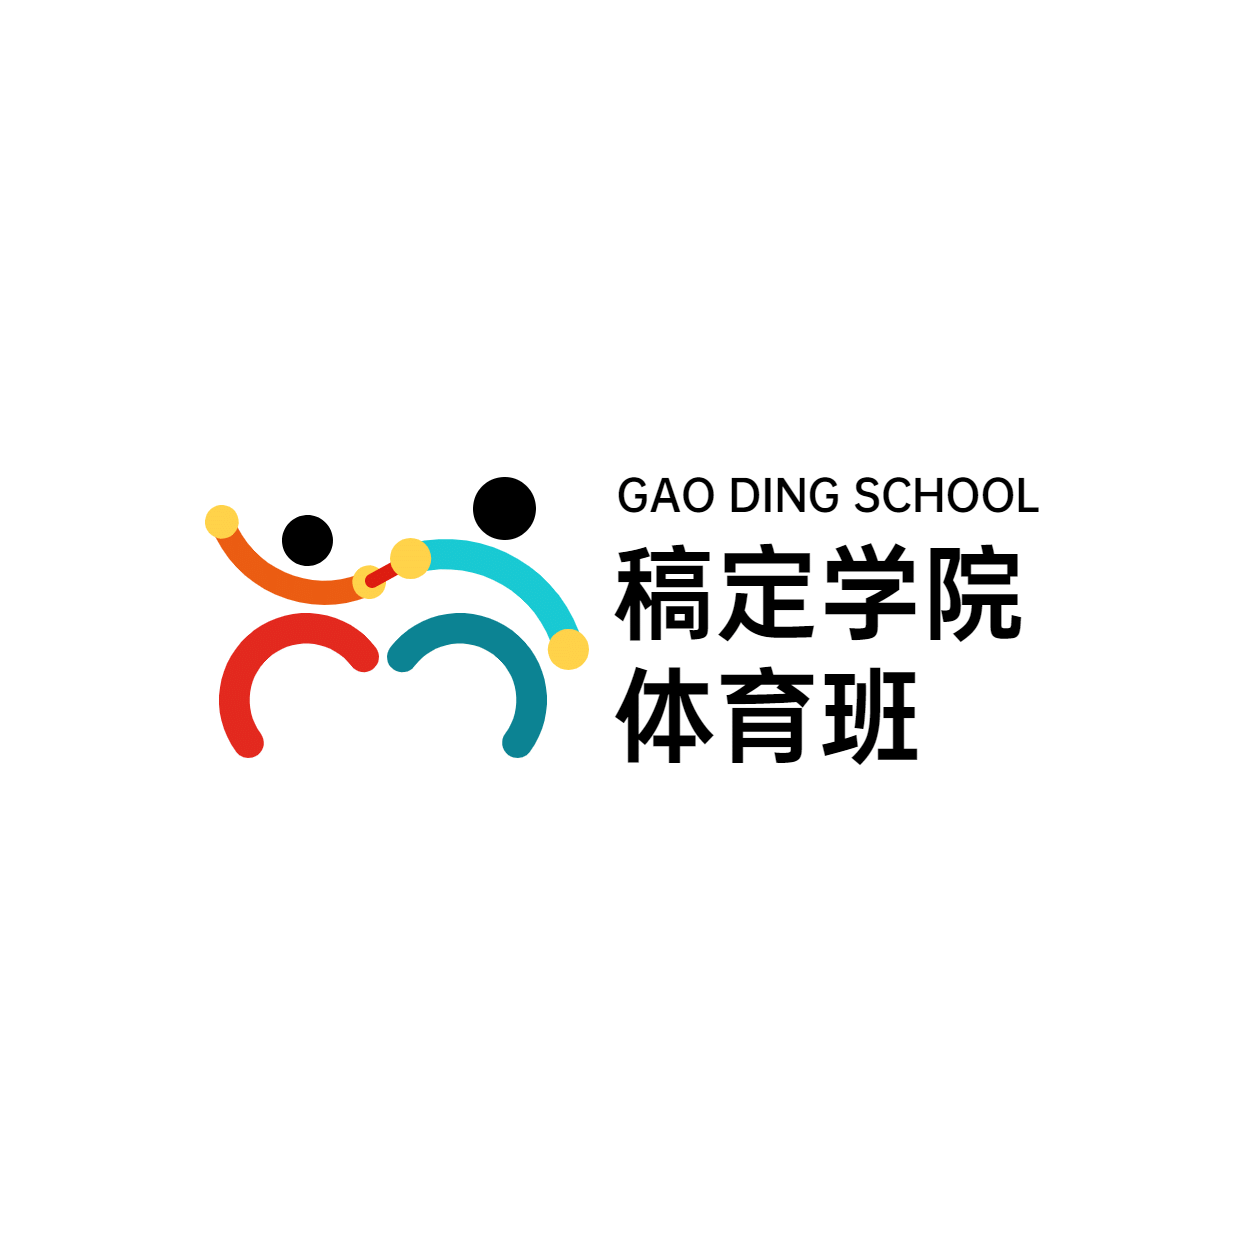 教育培训机构体育班logo预览效果